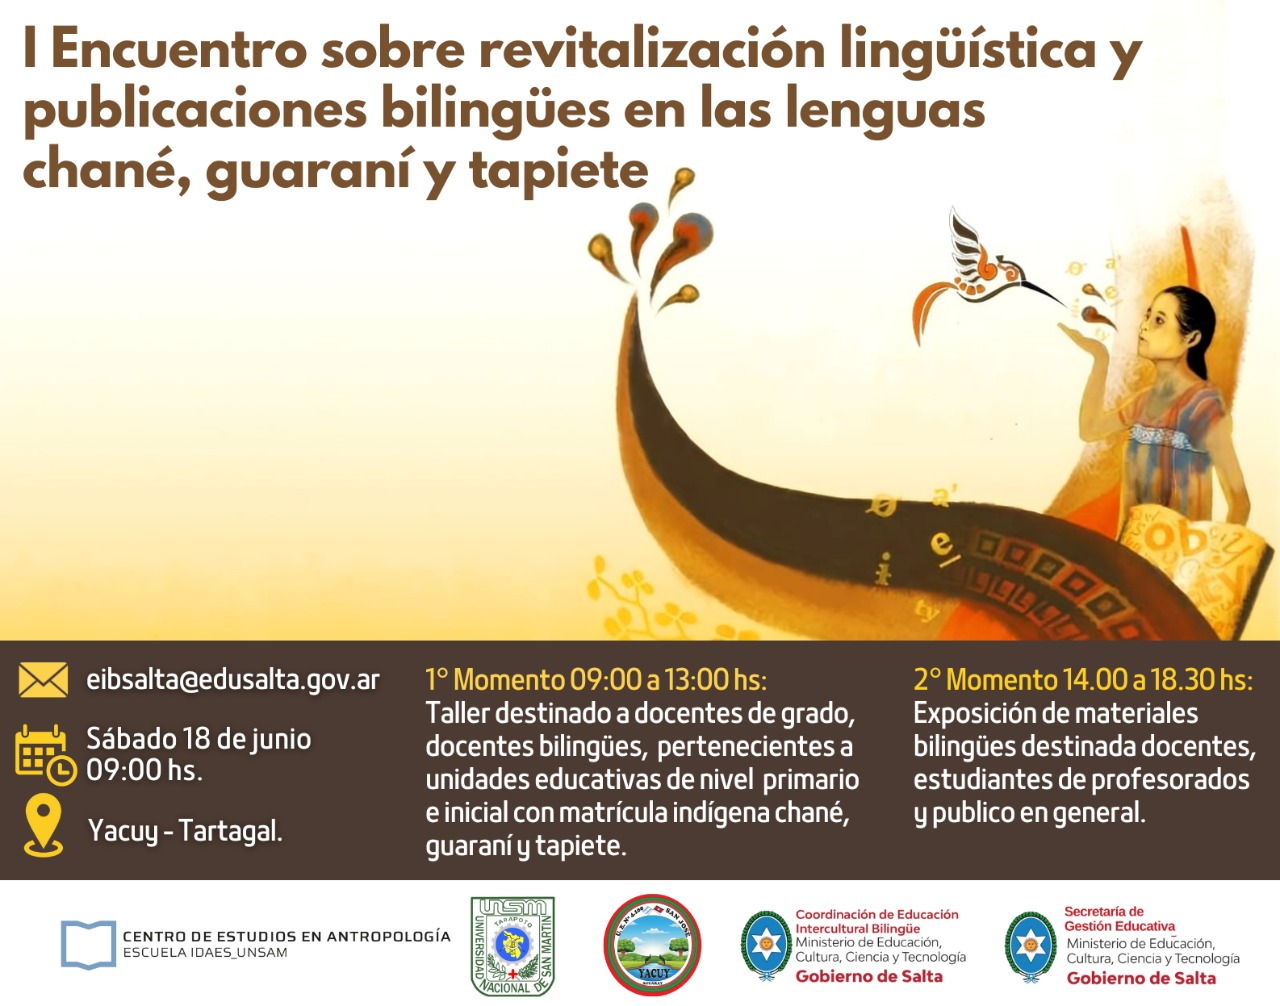 I Encuentro “Revitalización Lingüística y Publicaciones Bilingües en las lenguas guaraní, chané y tapiete”